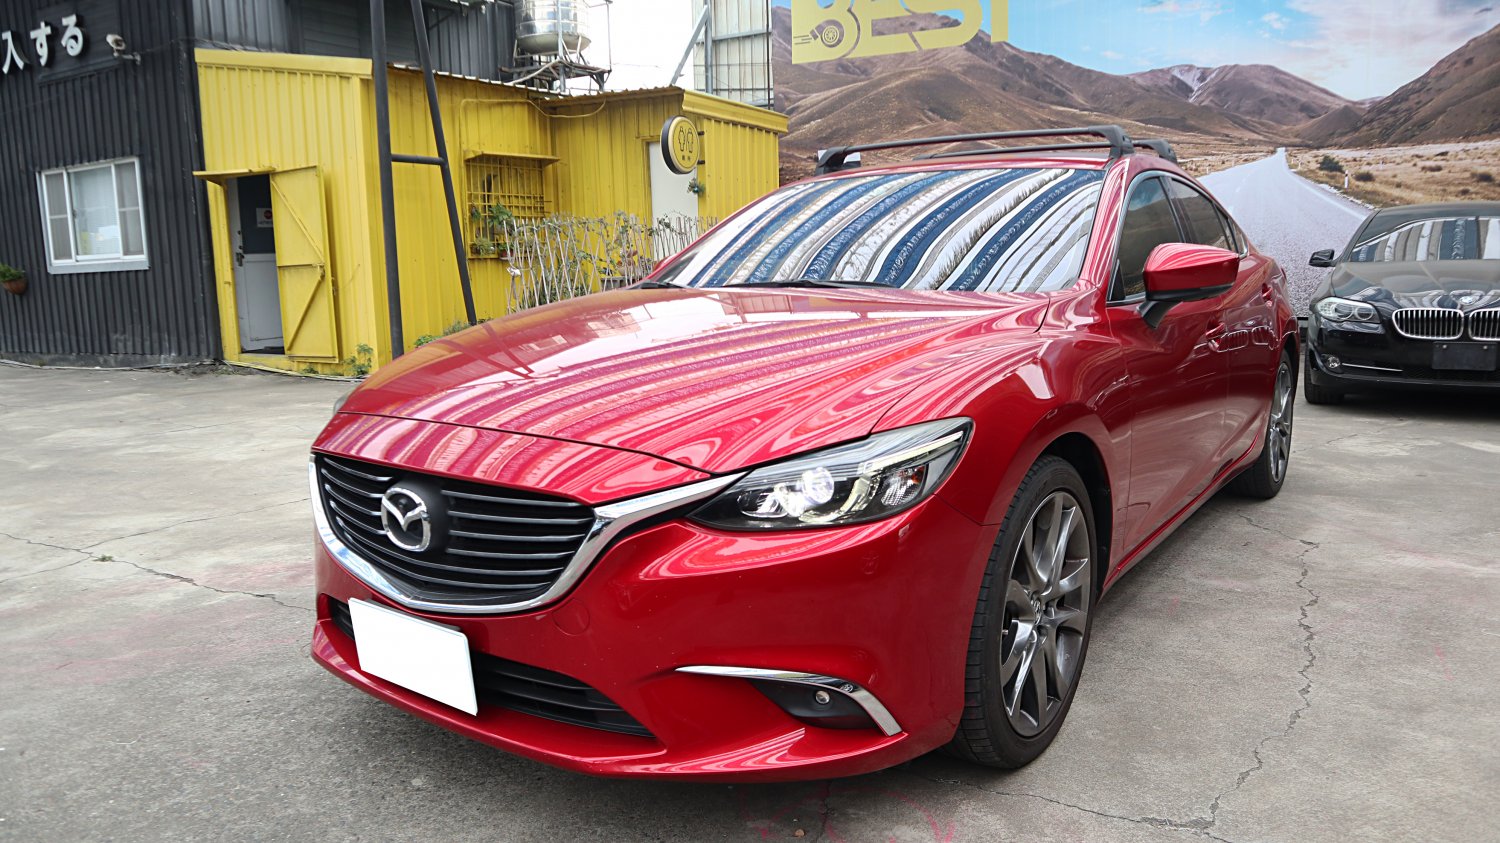 Mazda 馬自達 ／ Mazda 6 ／ 2016年 ／ 2016年 Mazda 6 深紅色 馬自達中古車 ／ MG車庫(台南)